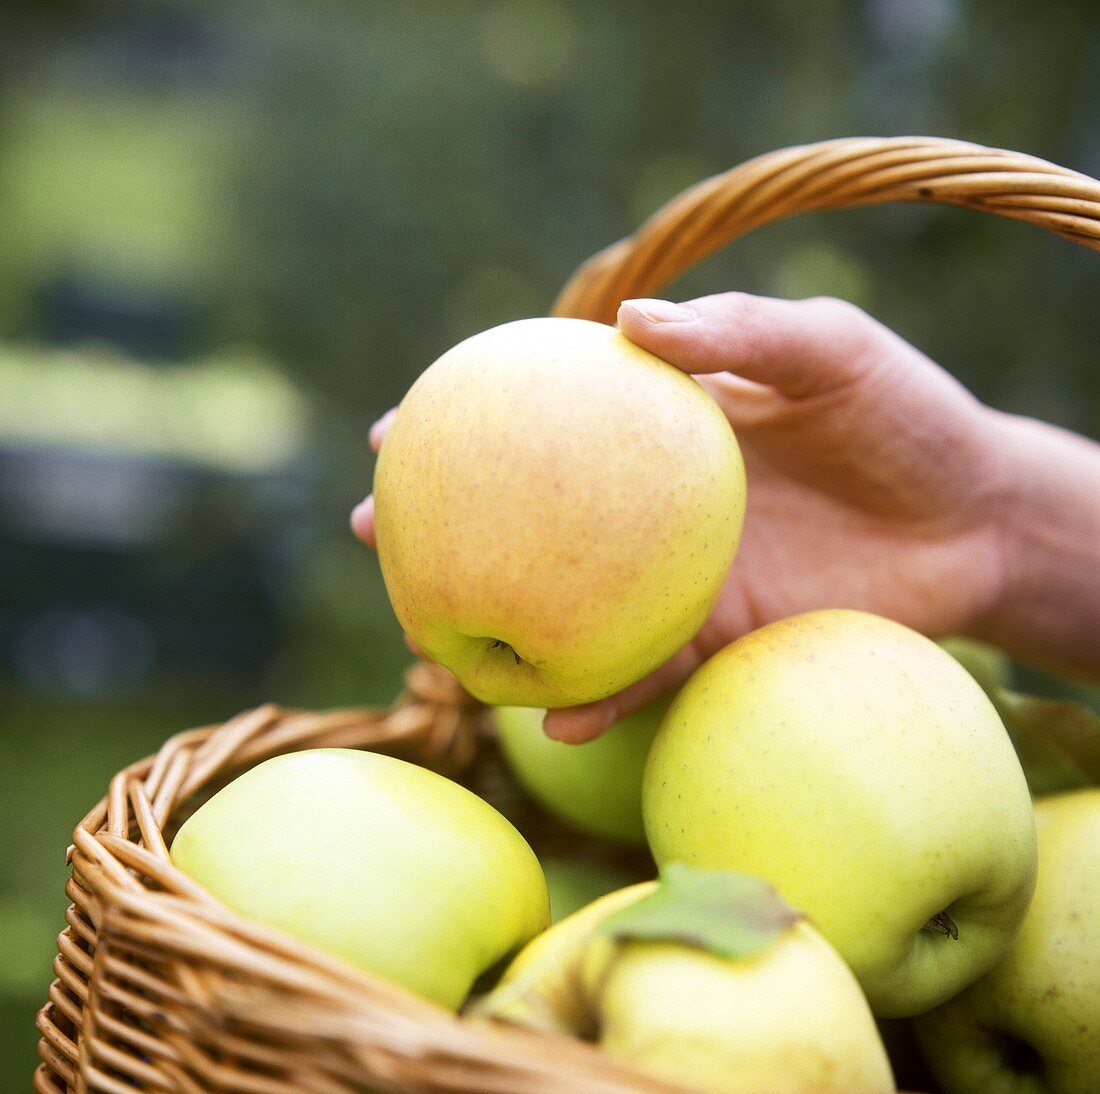 Hand nimmt einen Apfel der Sorte Golden Delicious aus Korb